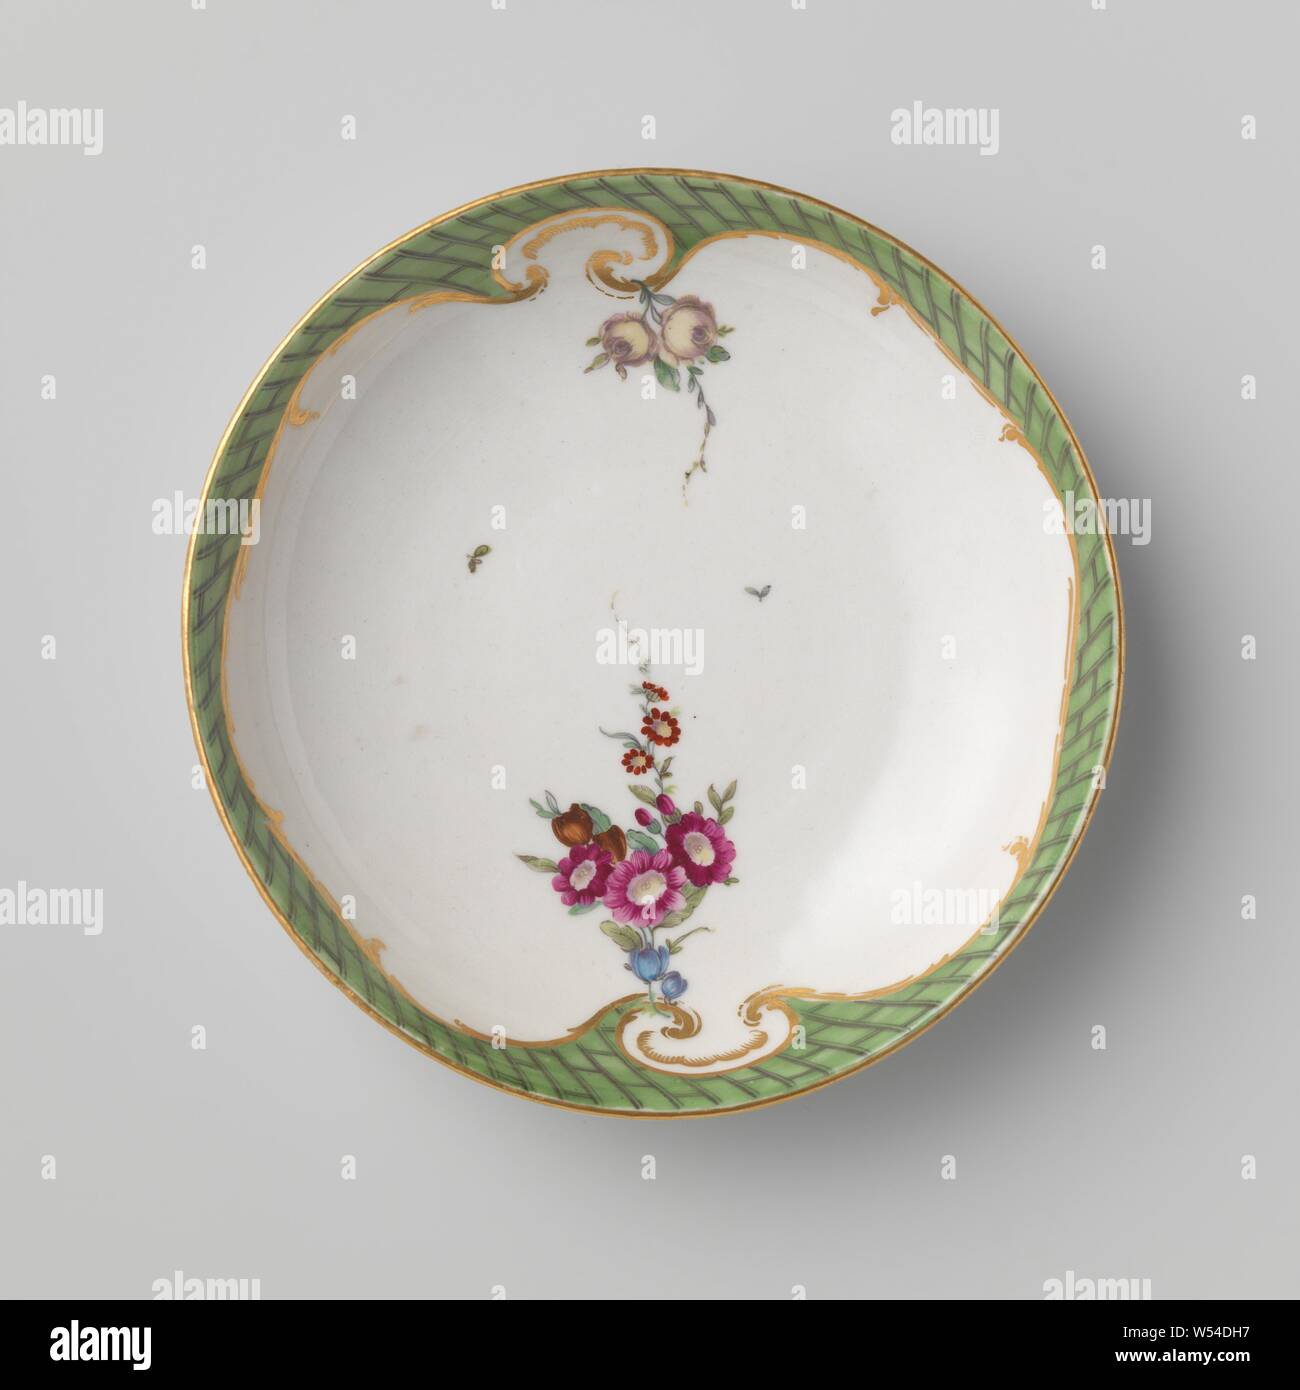 Dish, Porcelain dish. Multicolored painted with flower bouquets and a ladder motif along the edges., Manufactuur Oud-Loosdrecht, Loosdrecht, 1774 - 1784, porcelain (material), d 13.3 cm × h 2.9 cm Stock Photo